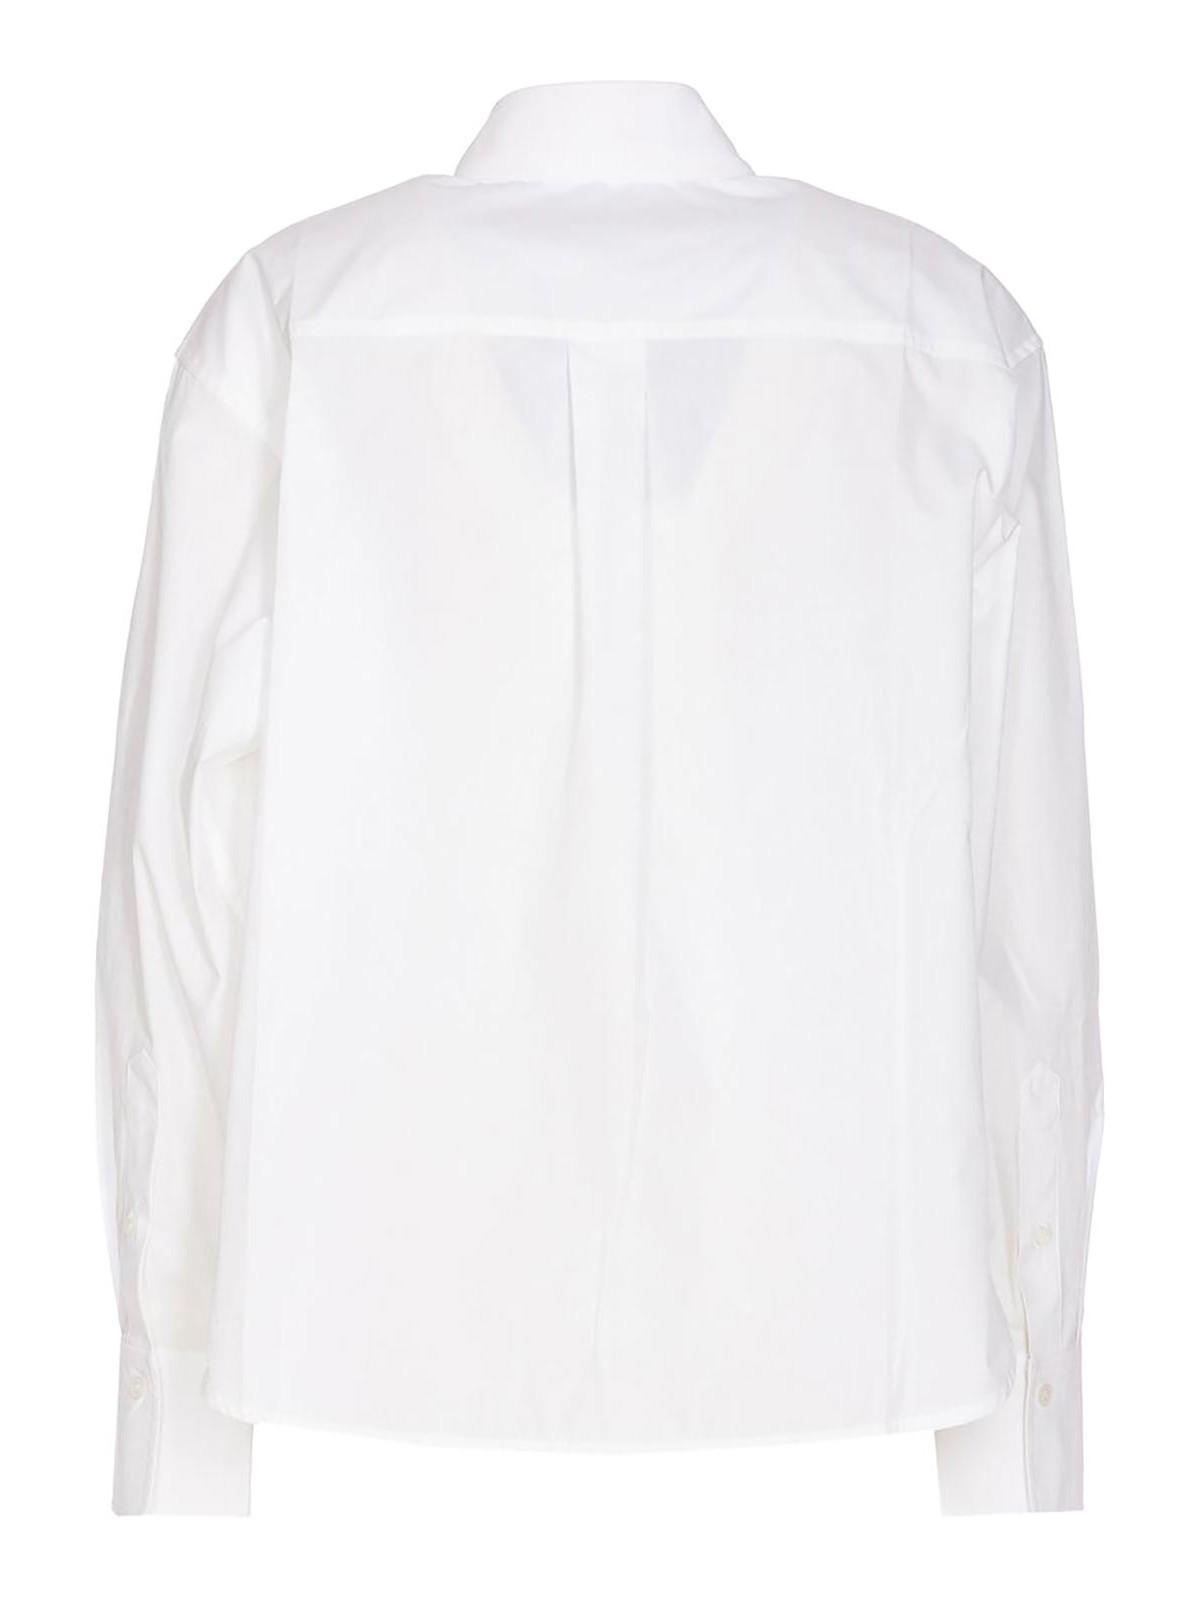 Shop Victoria Beckham Camisa - Blanco In White